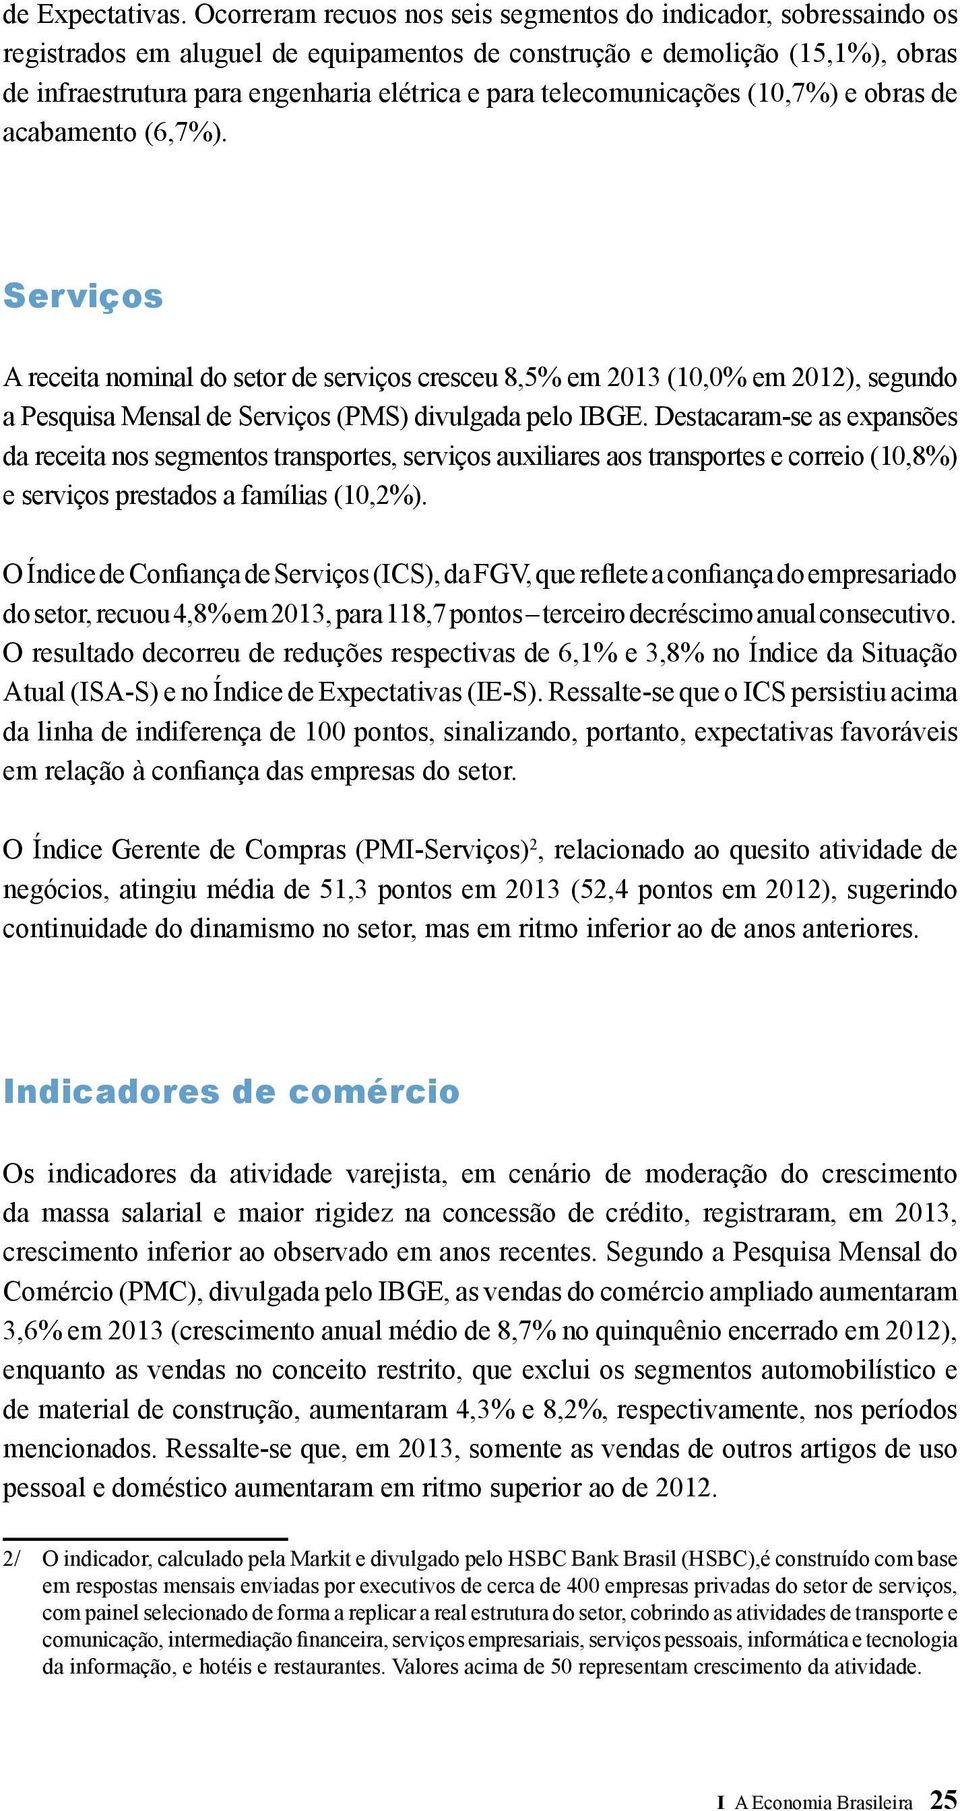 telecomunicações (10,7%) e obras de acabamento (6,7%).